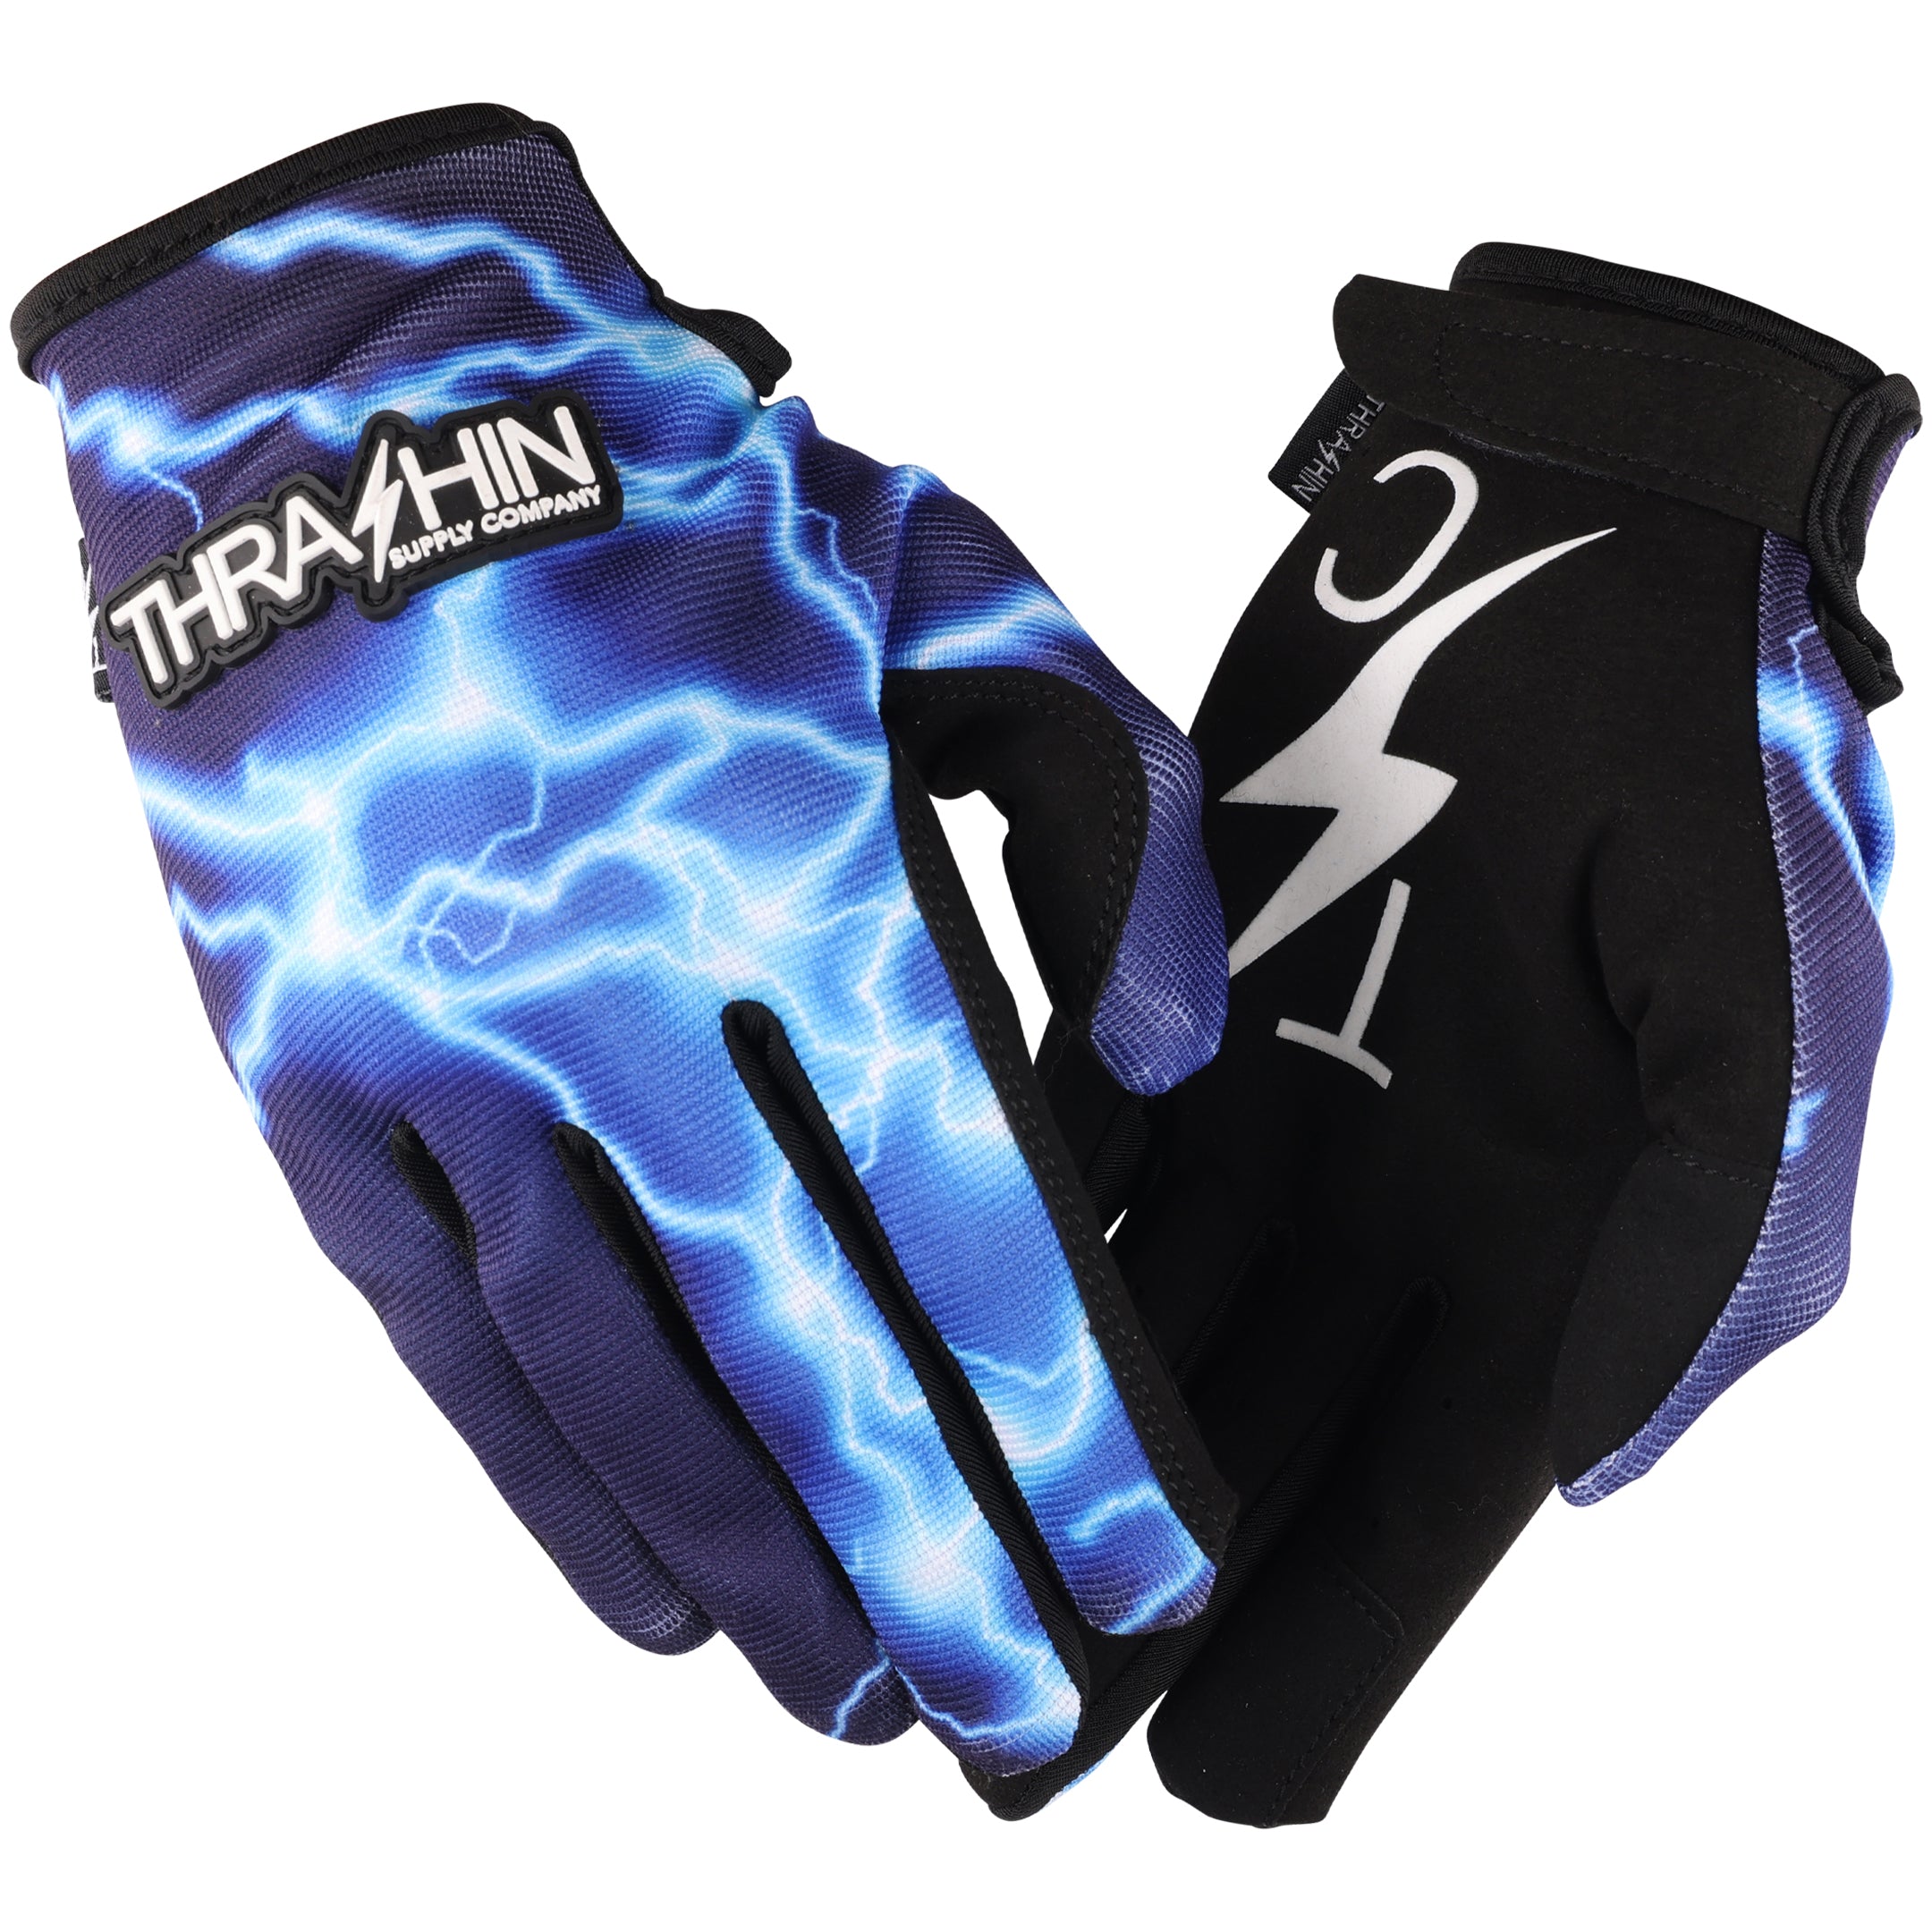 Esitellä 70+ imagen lightning gloves